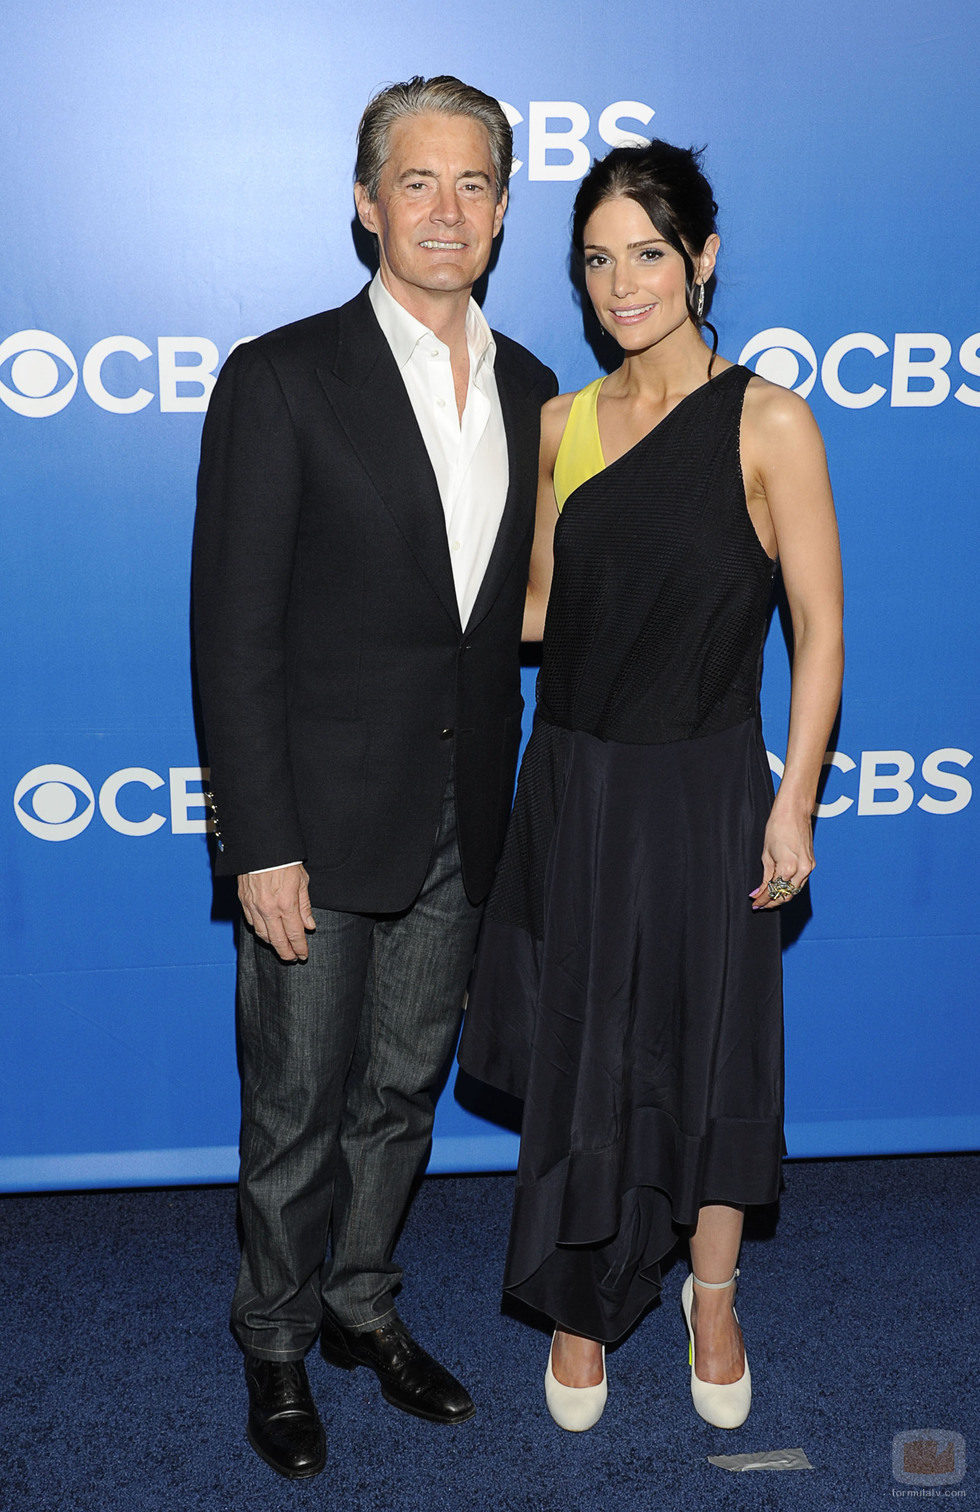 Kyle MacLachlan y Janet Montgomery de 'Made in Jersey' en los Upfronts de CBS